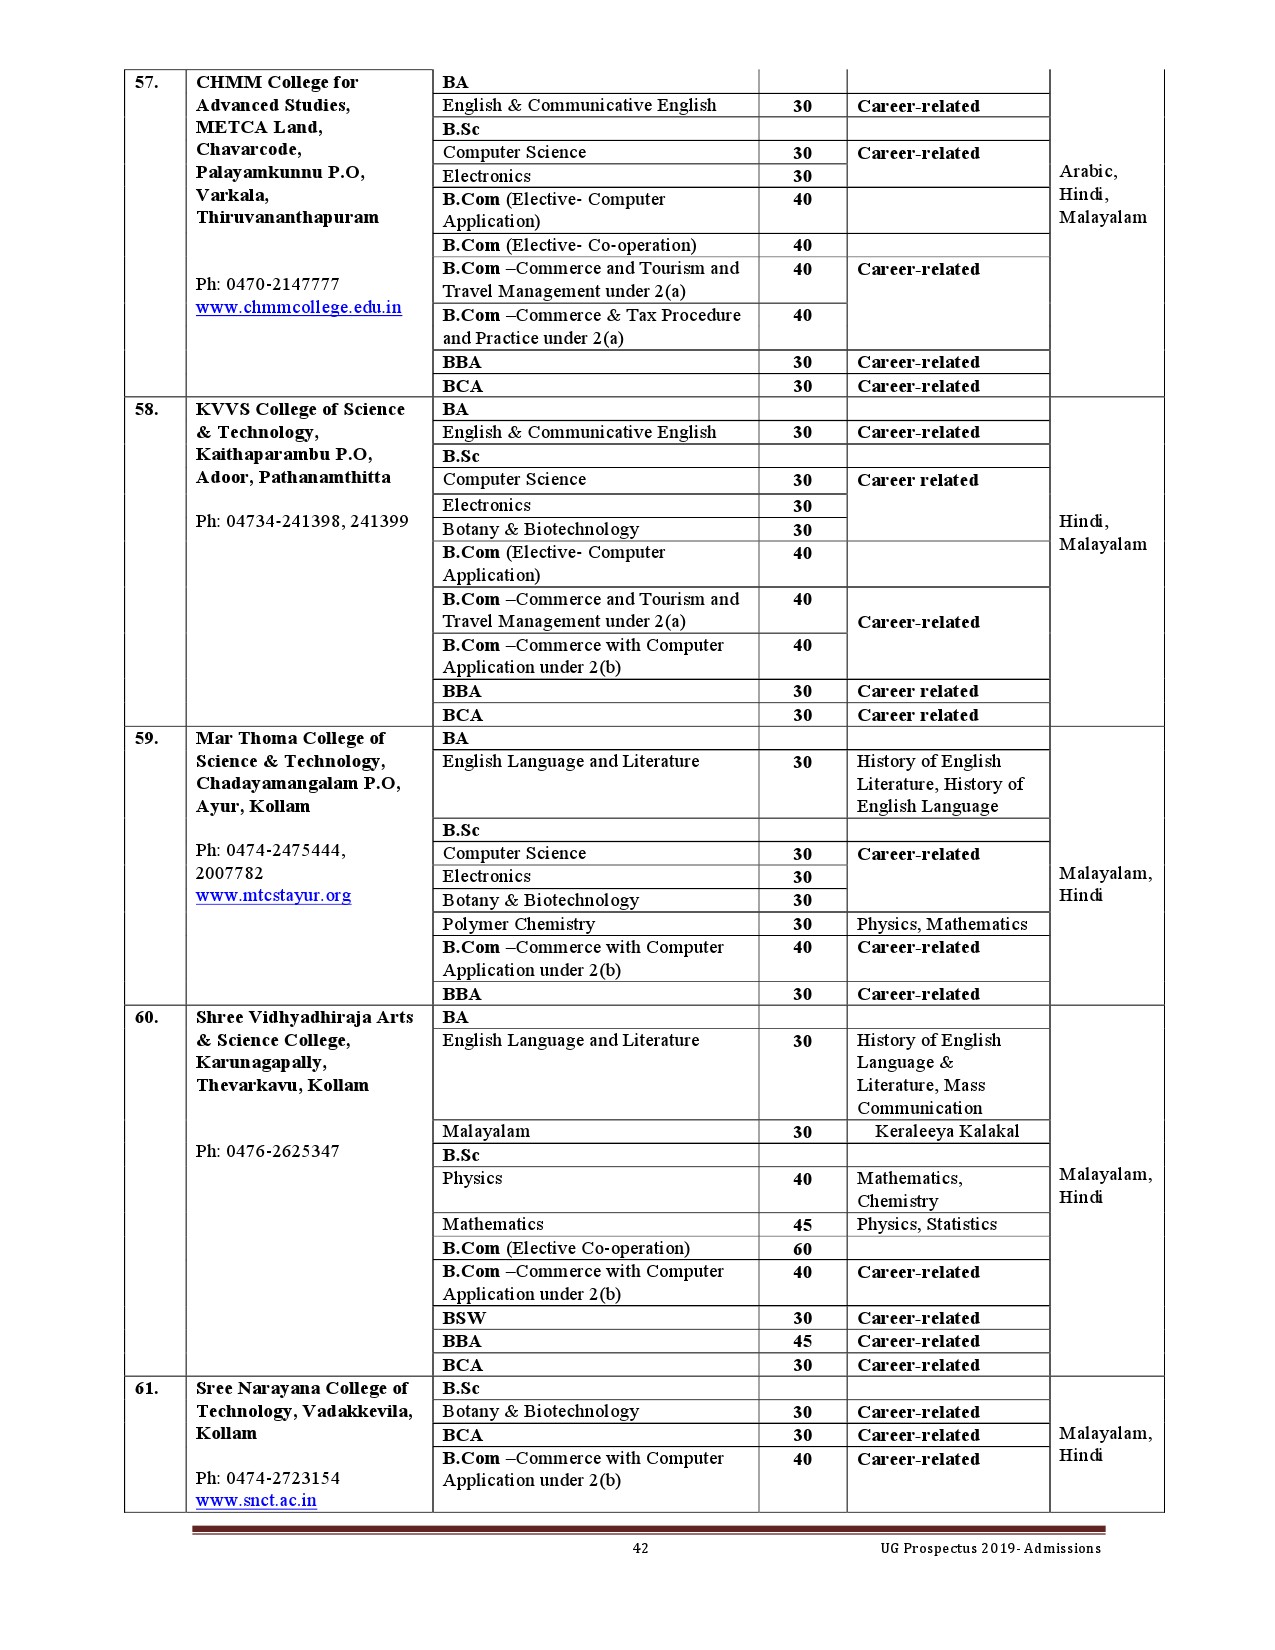 Kerala University UG Admission Prospectus 2019 - Notification Image 42